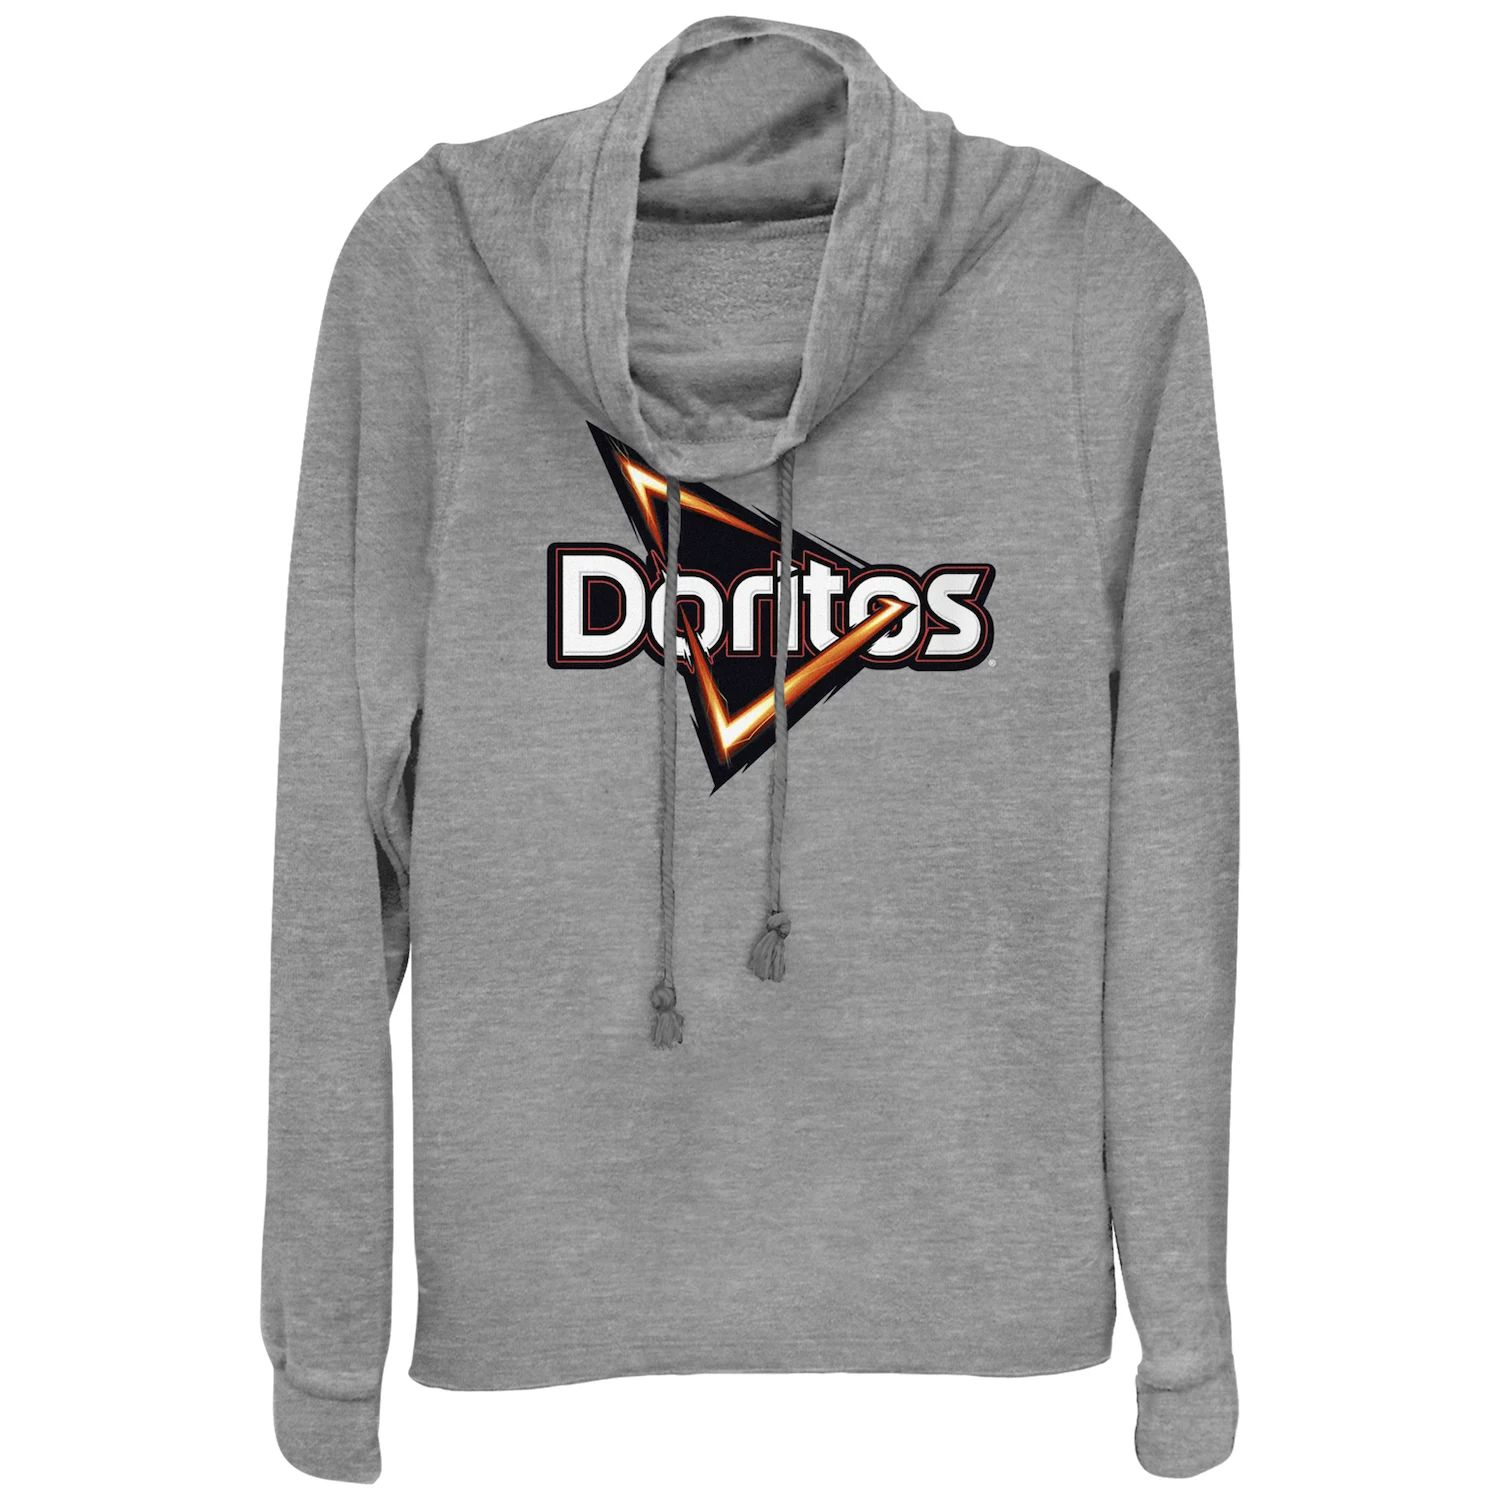 Пуловер с воротником-хомутом и классическим логотипом Doritos Triangle Chips для юниоров Doritos doritos dinamita flamin hot 40 gm